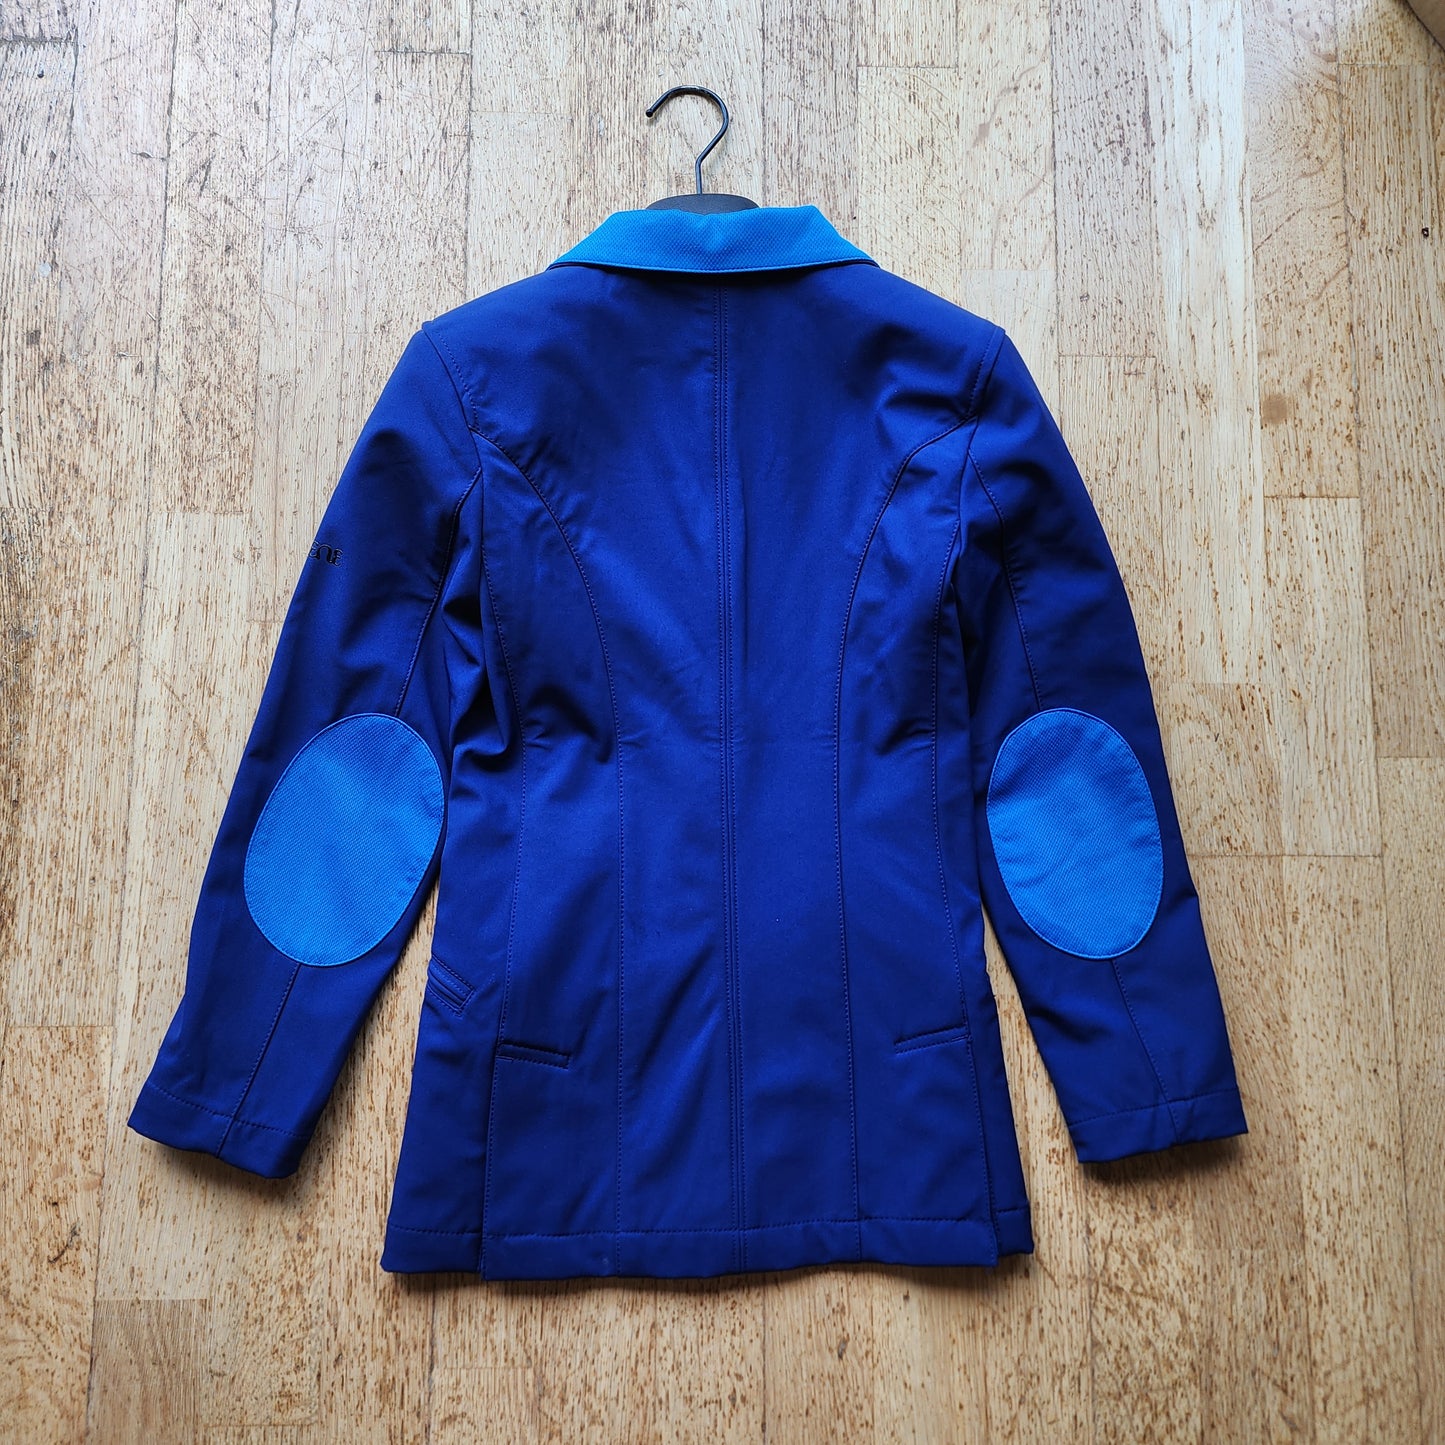 Caldene blue show jacket, girls size 10